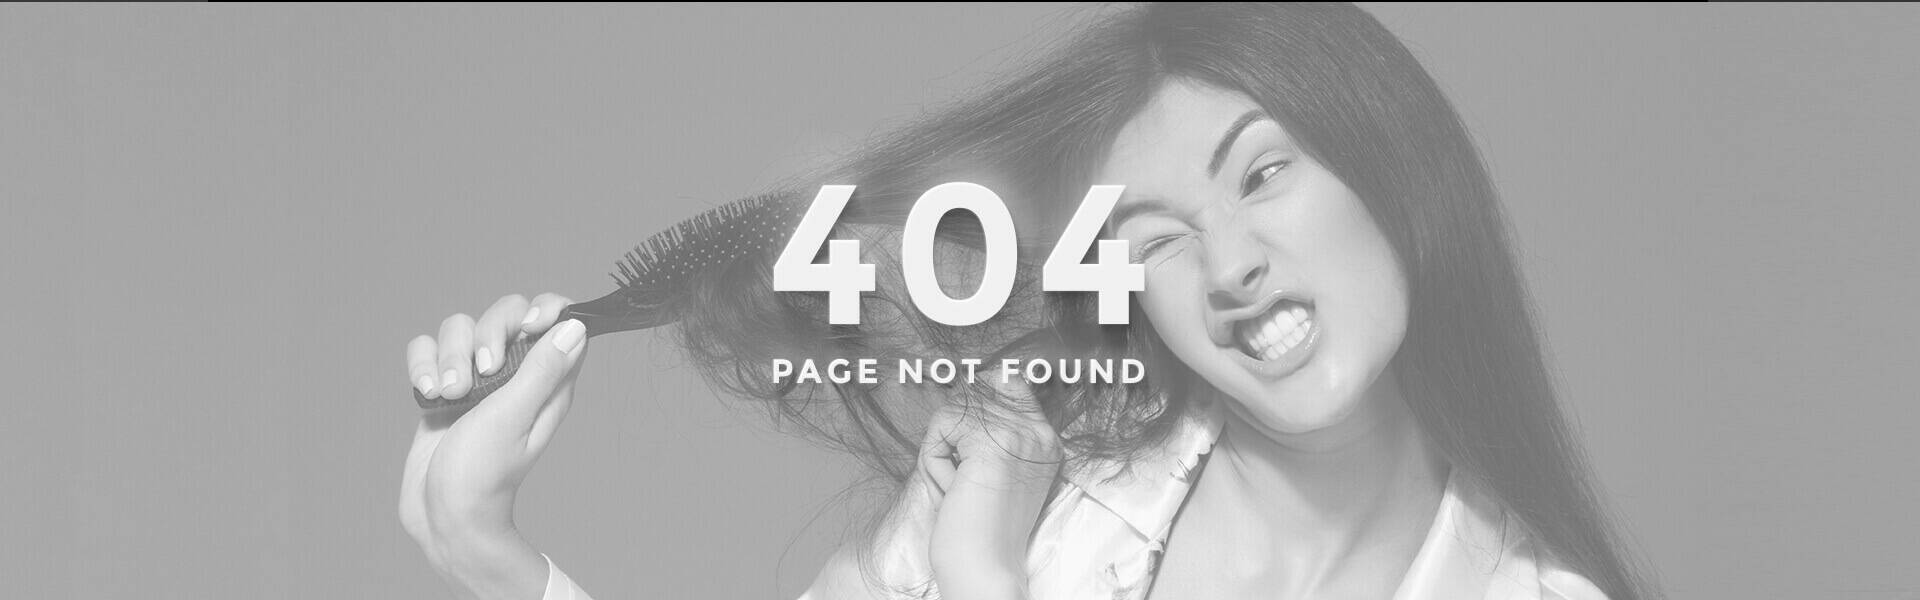 Obrázek 404